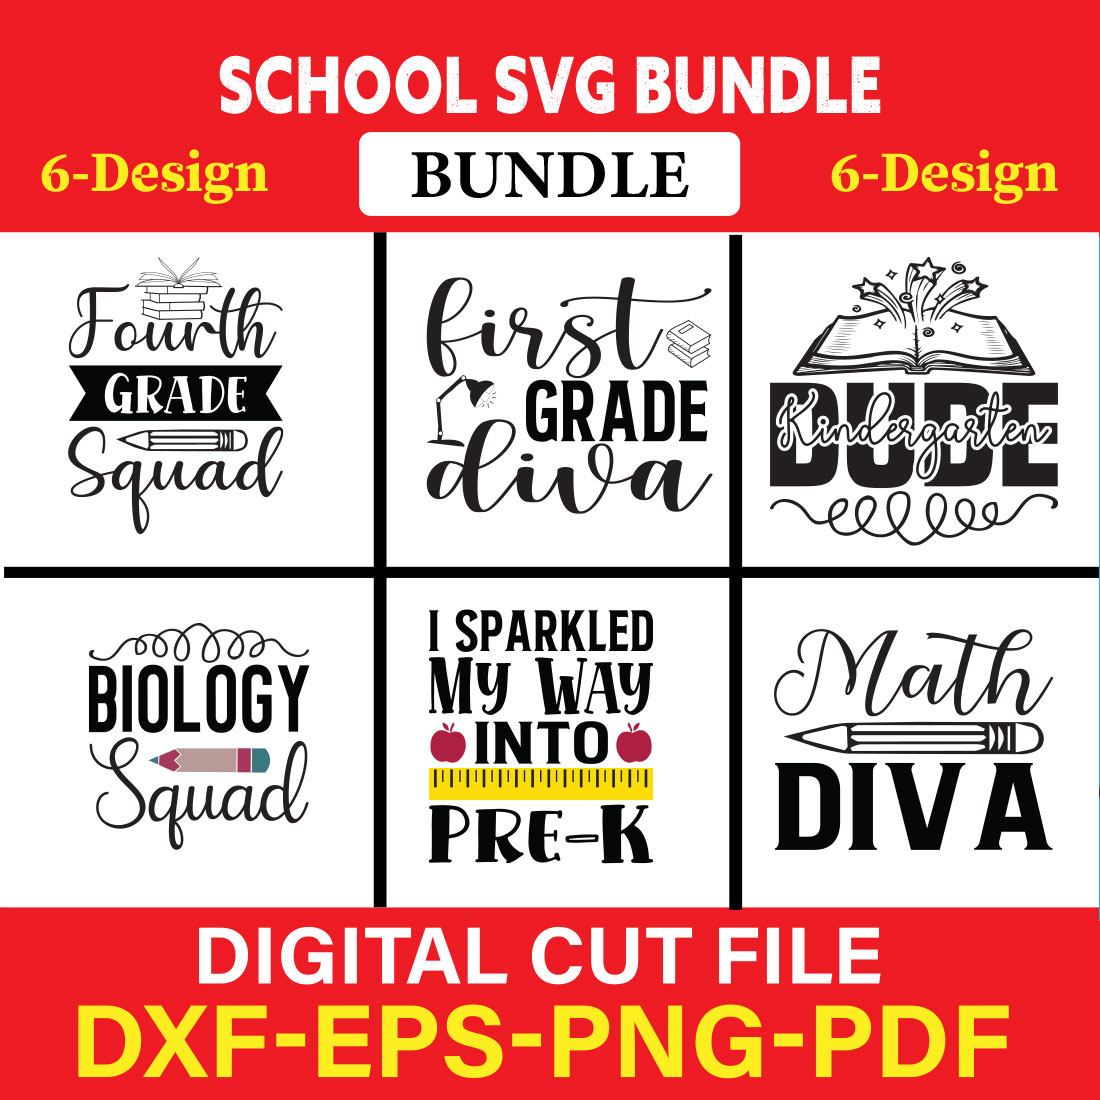 School svg bundle T-shirt Design Bundle Vol-11 cover image.